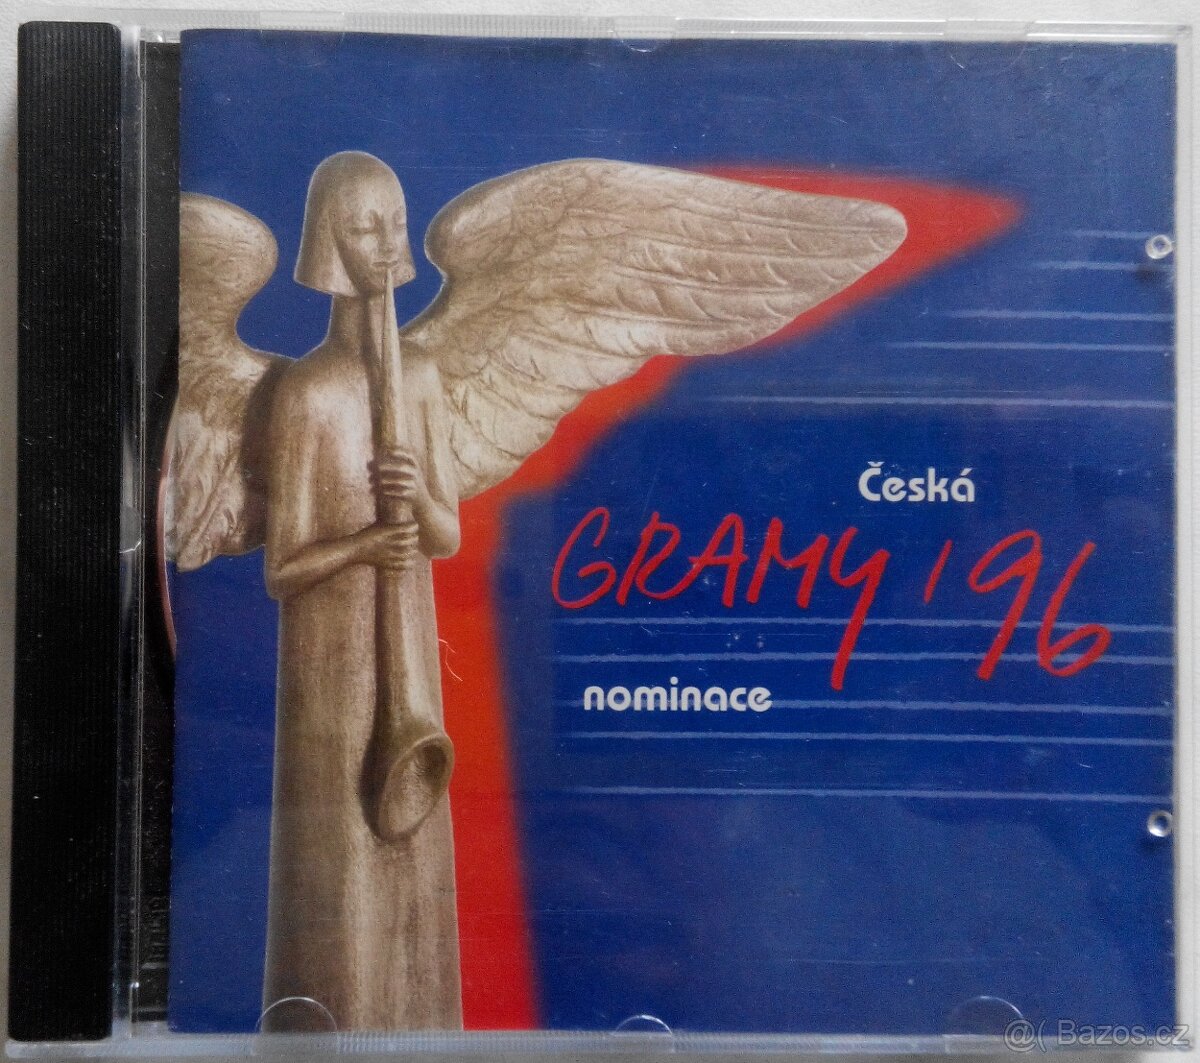 CD Česká Gramy 1996 nominace